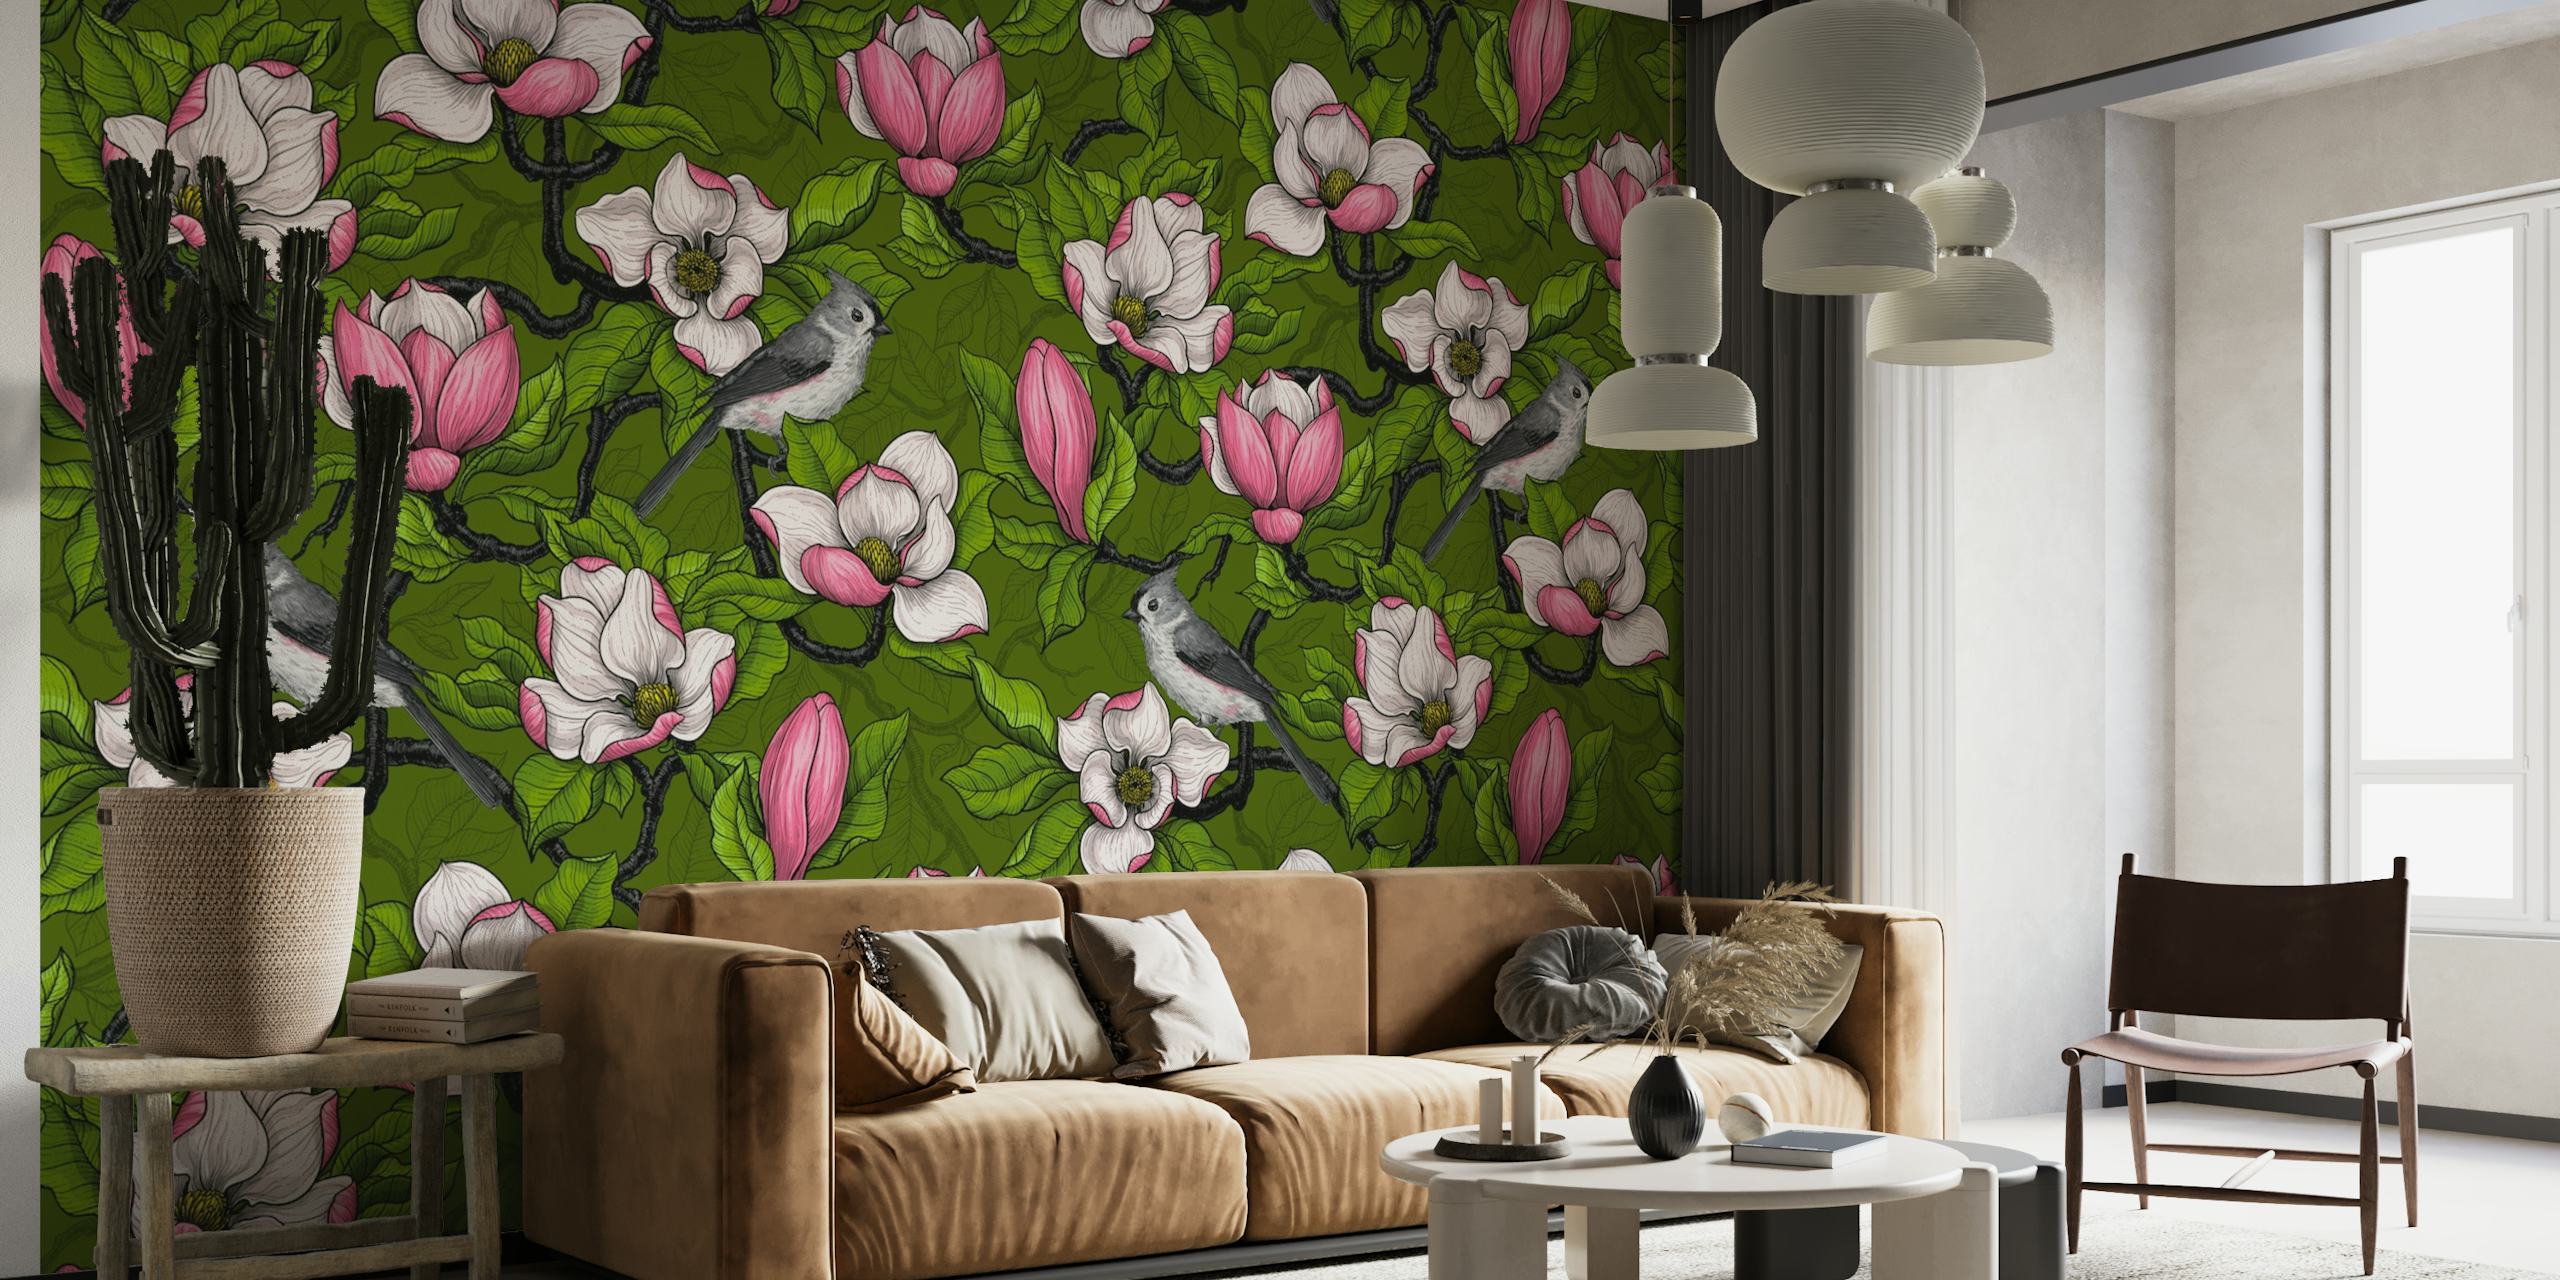 Cvjetovi magnolije u cvatu s pticama koje lete zidni mural